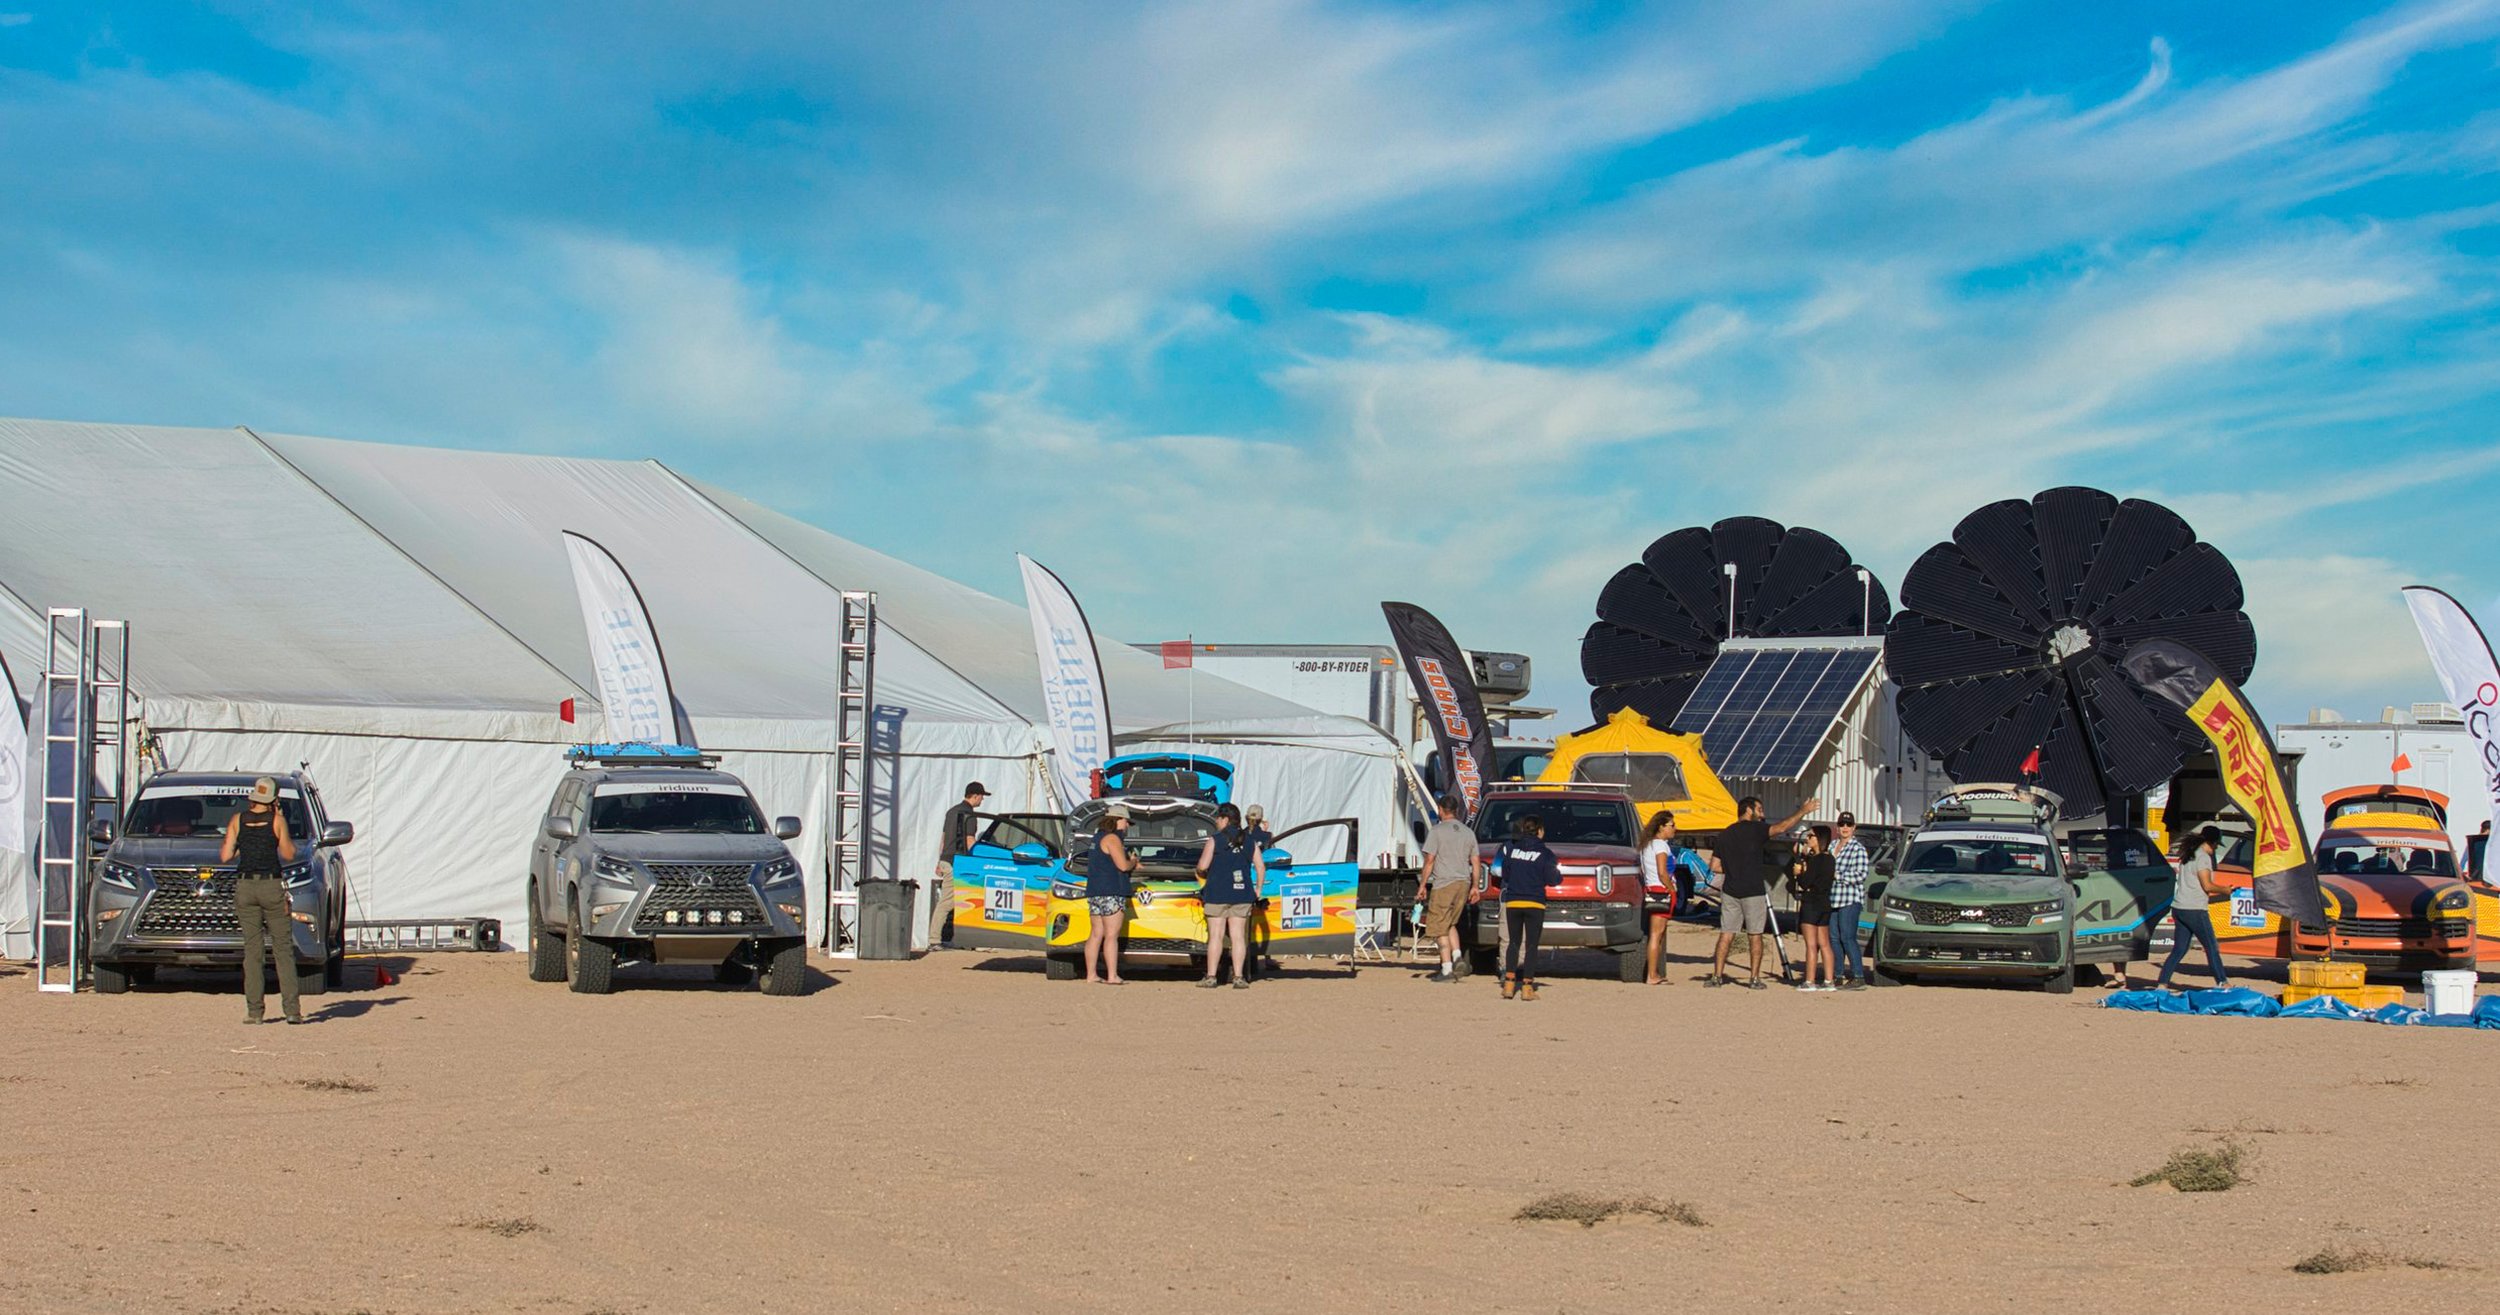 MEC-S Solar Powering the Rebelle Rally Base Camp (Copy)